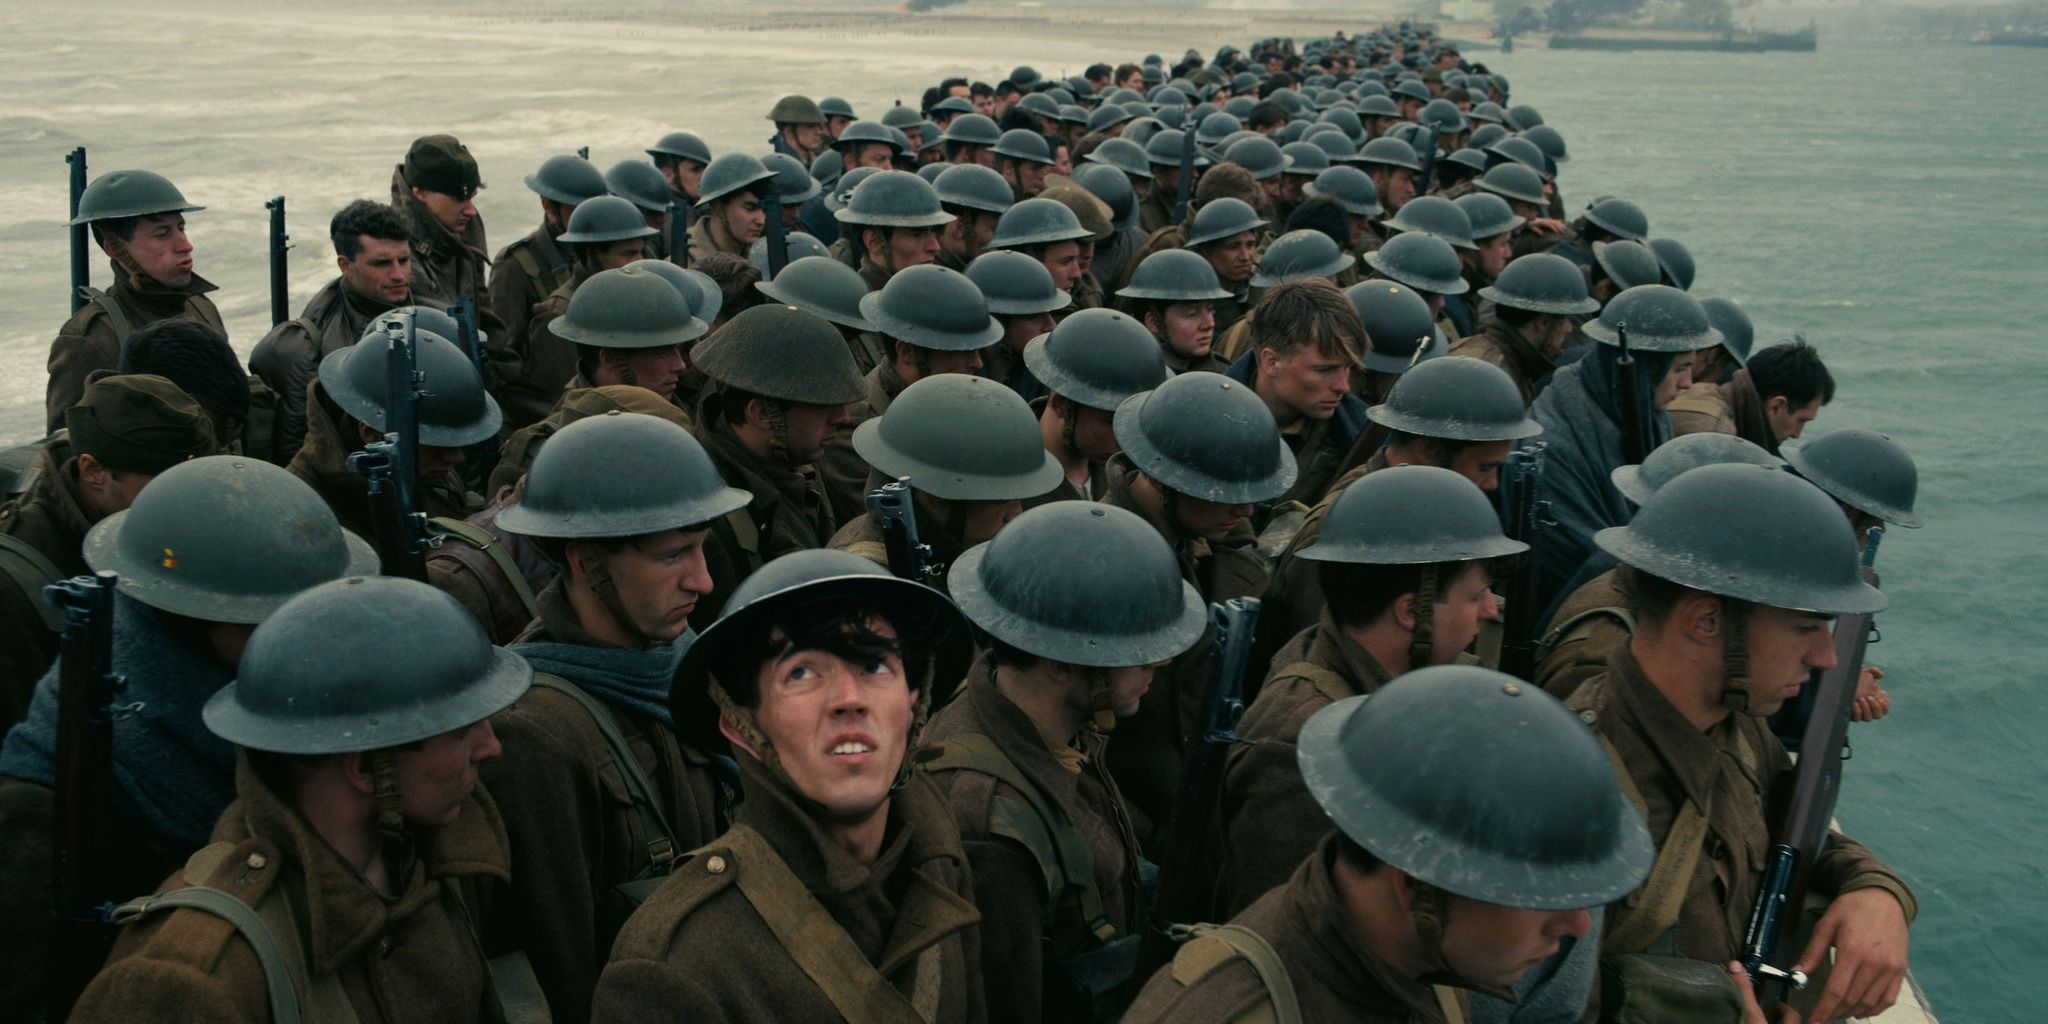 The teaser trailer for Dunkirk